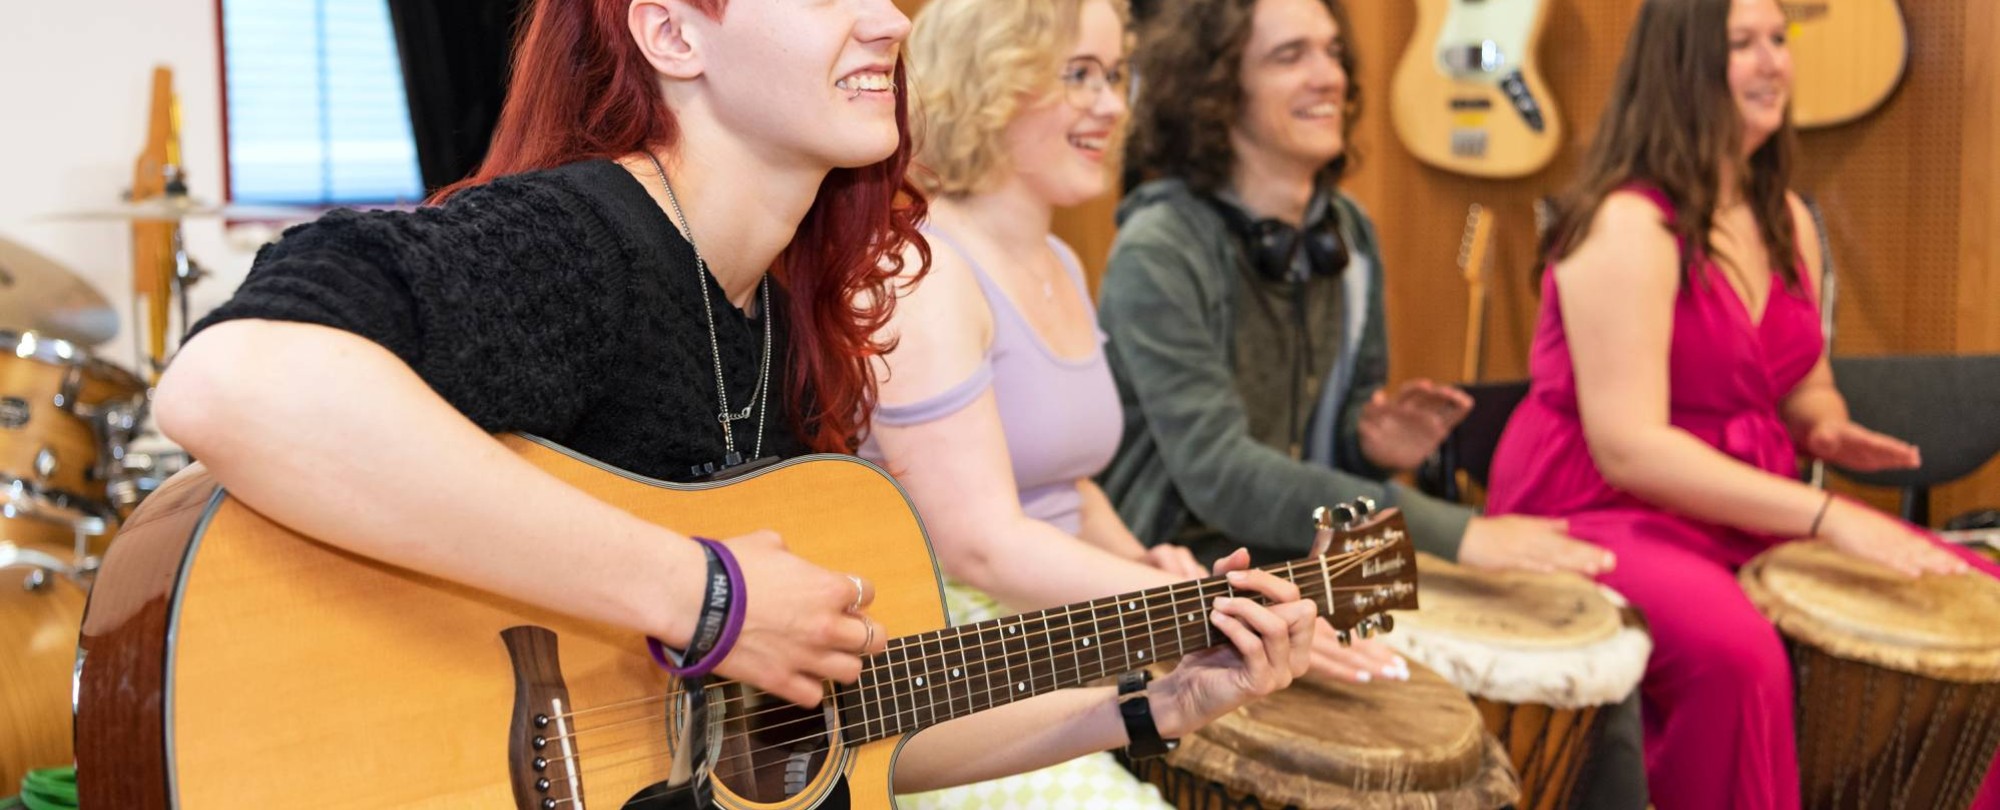 Studenten maken muziek in muzieklokaal